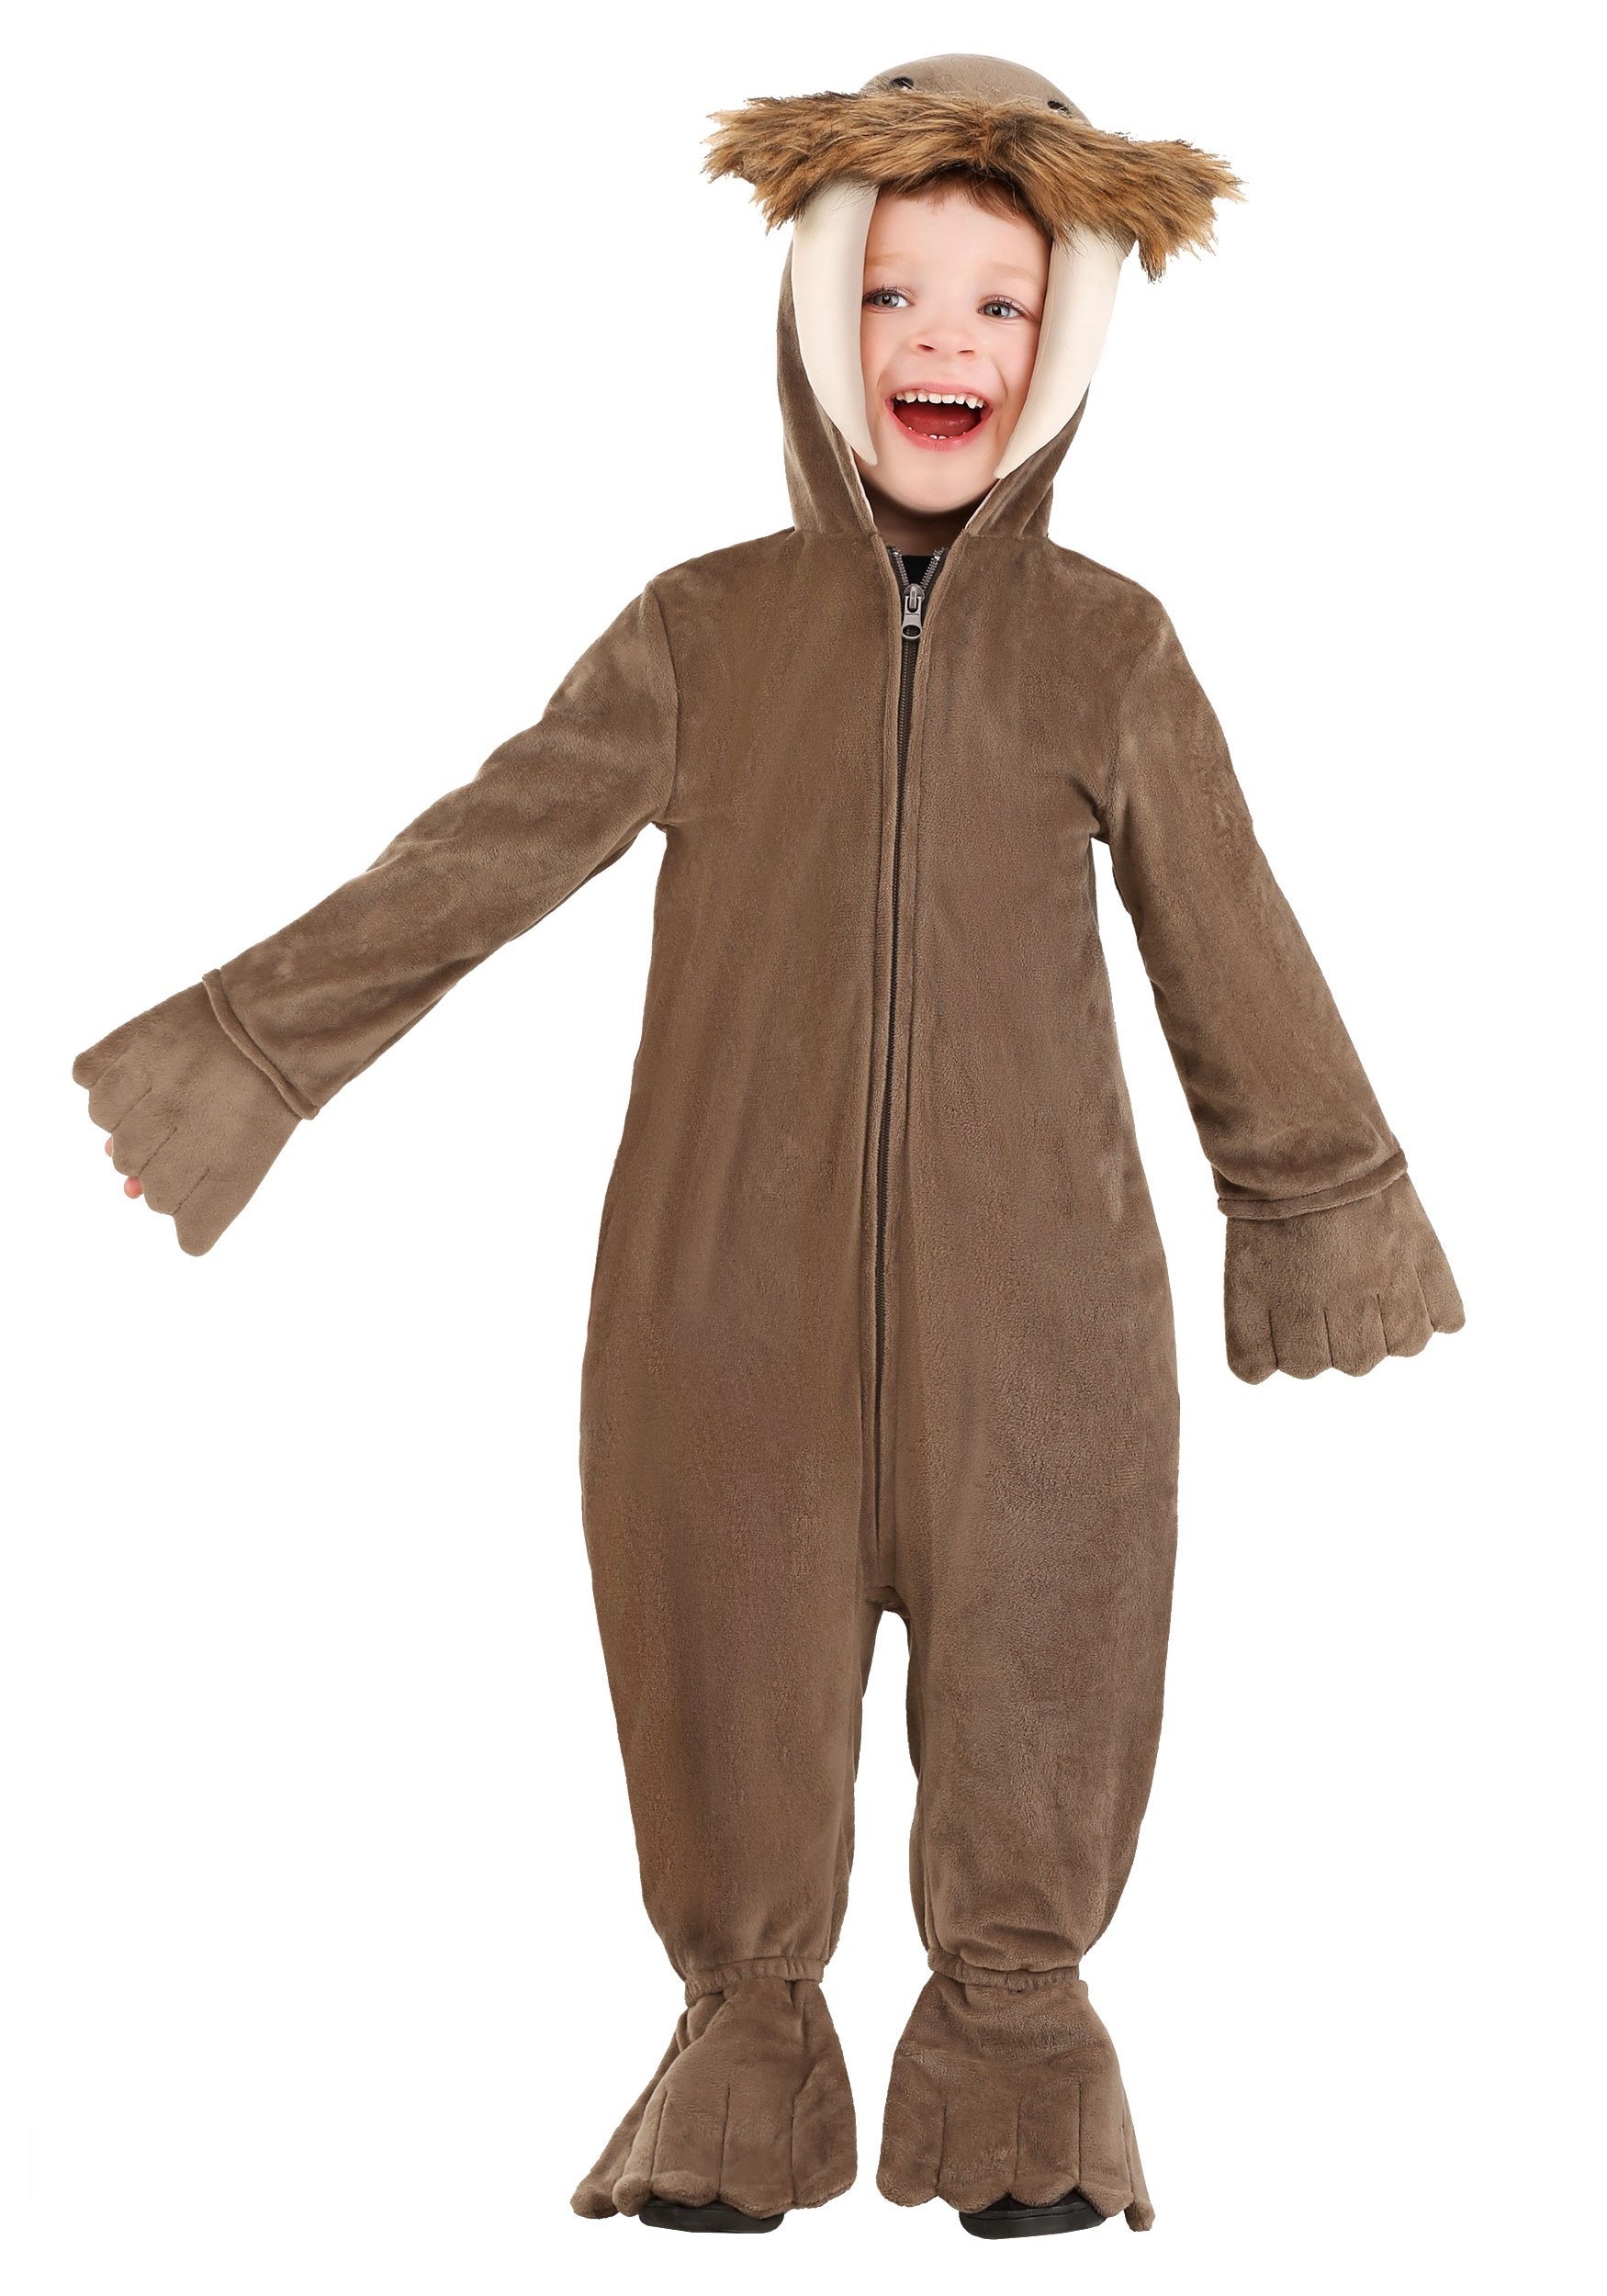 Infant Walrus Costume